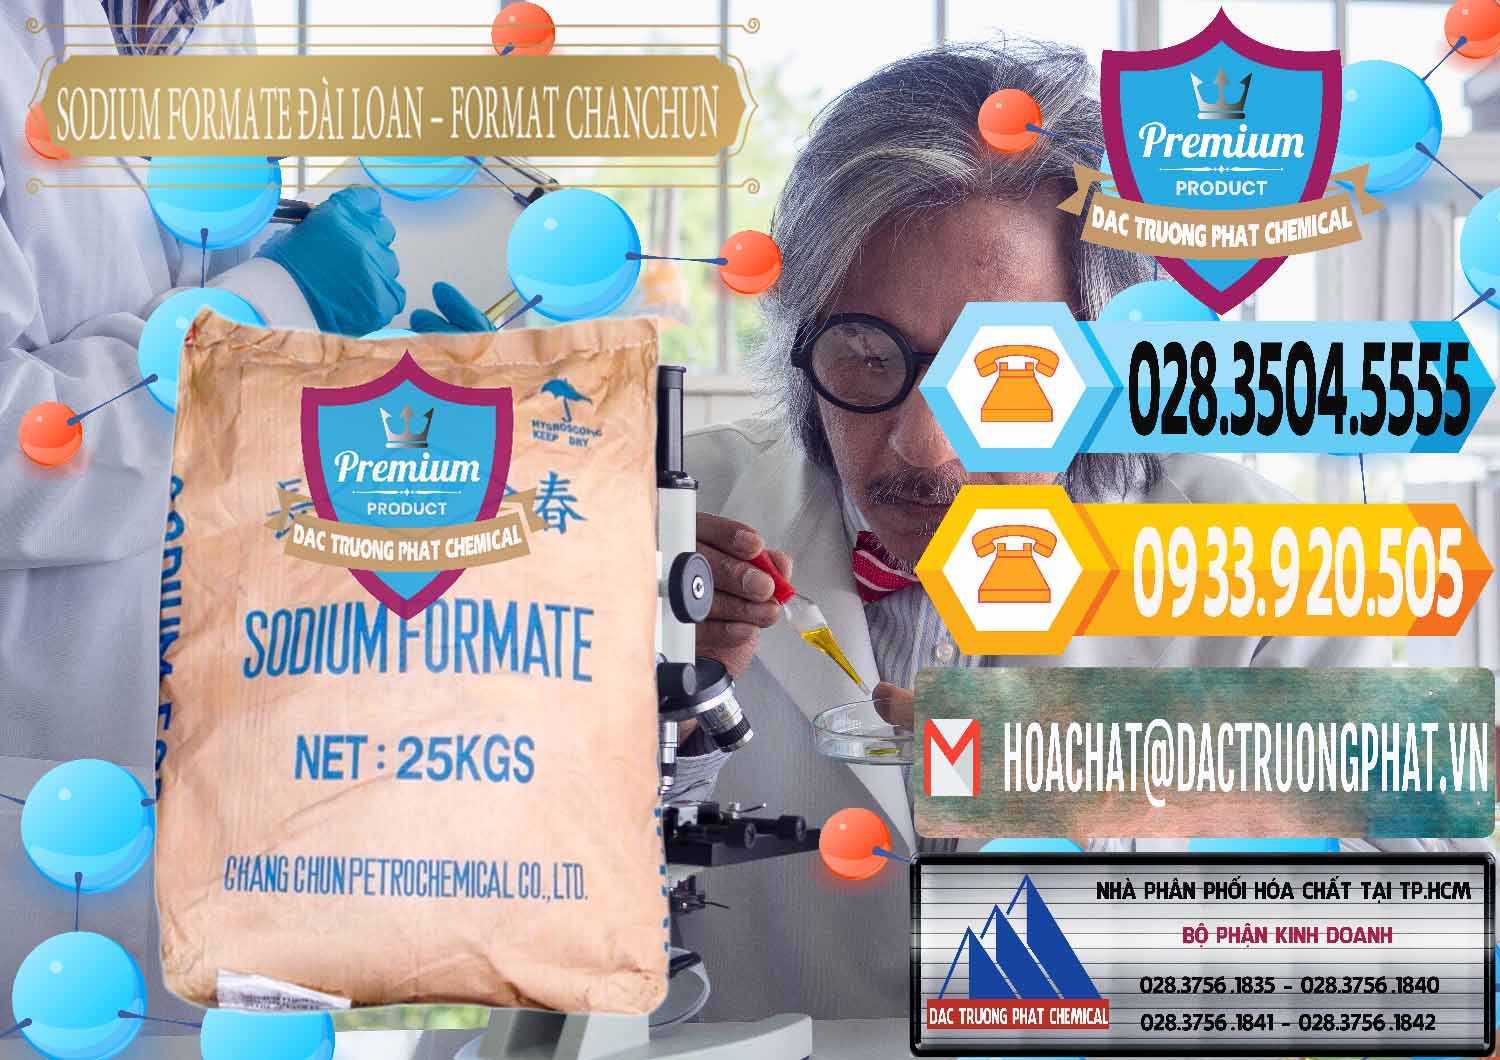 Chuyên bán - cung ứng Sodium Formate - Natri Format Đài Loan Taiwan - 0141 - Công ty phân phối _ nhập khẩu hóa chất tại TP.HCM - hoachattayrua.net